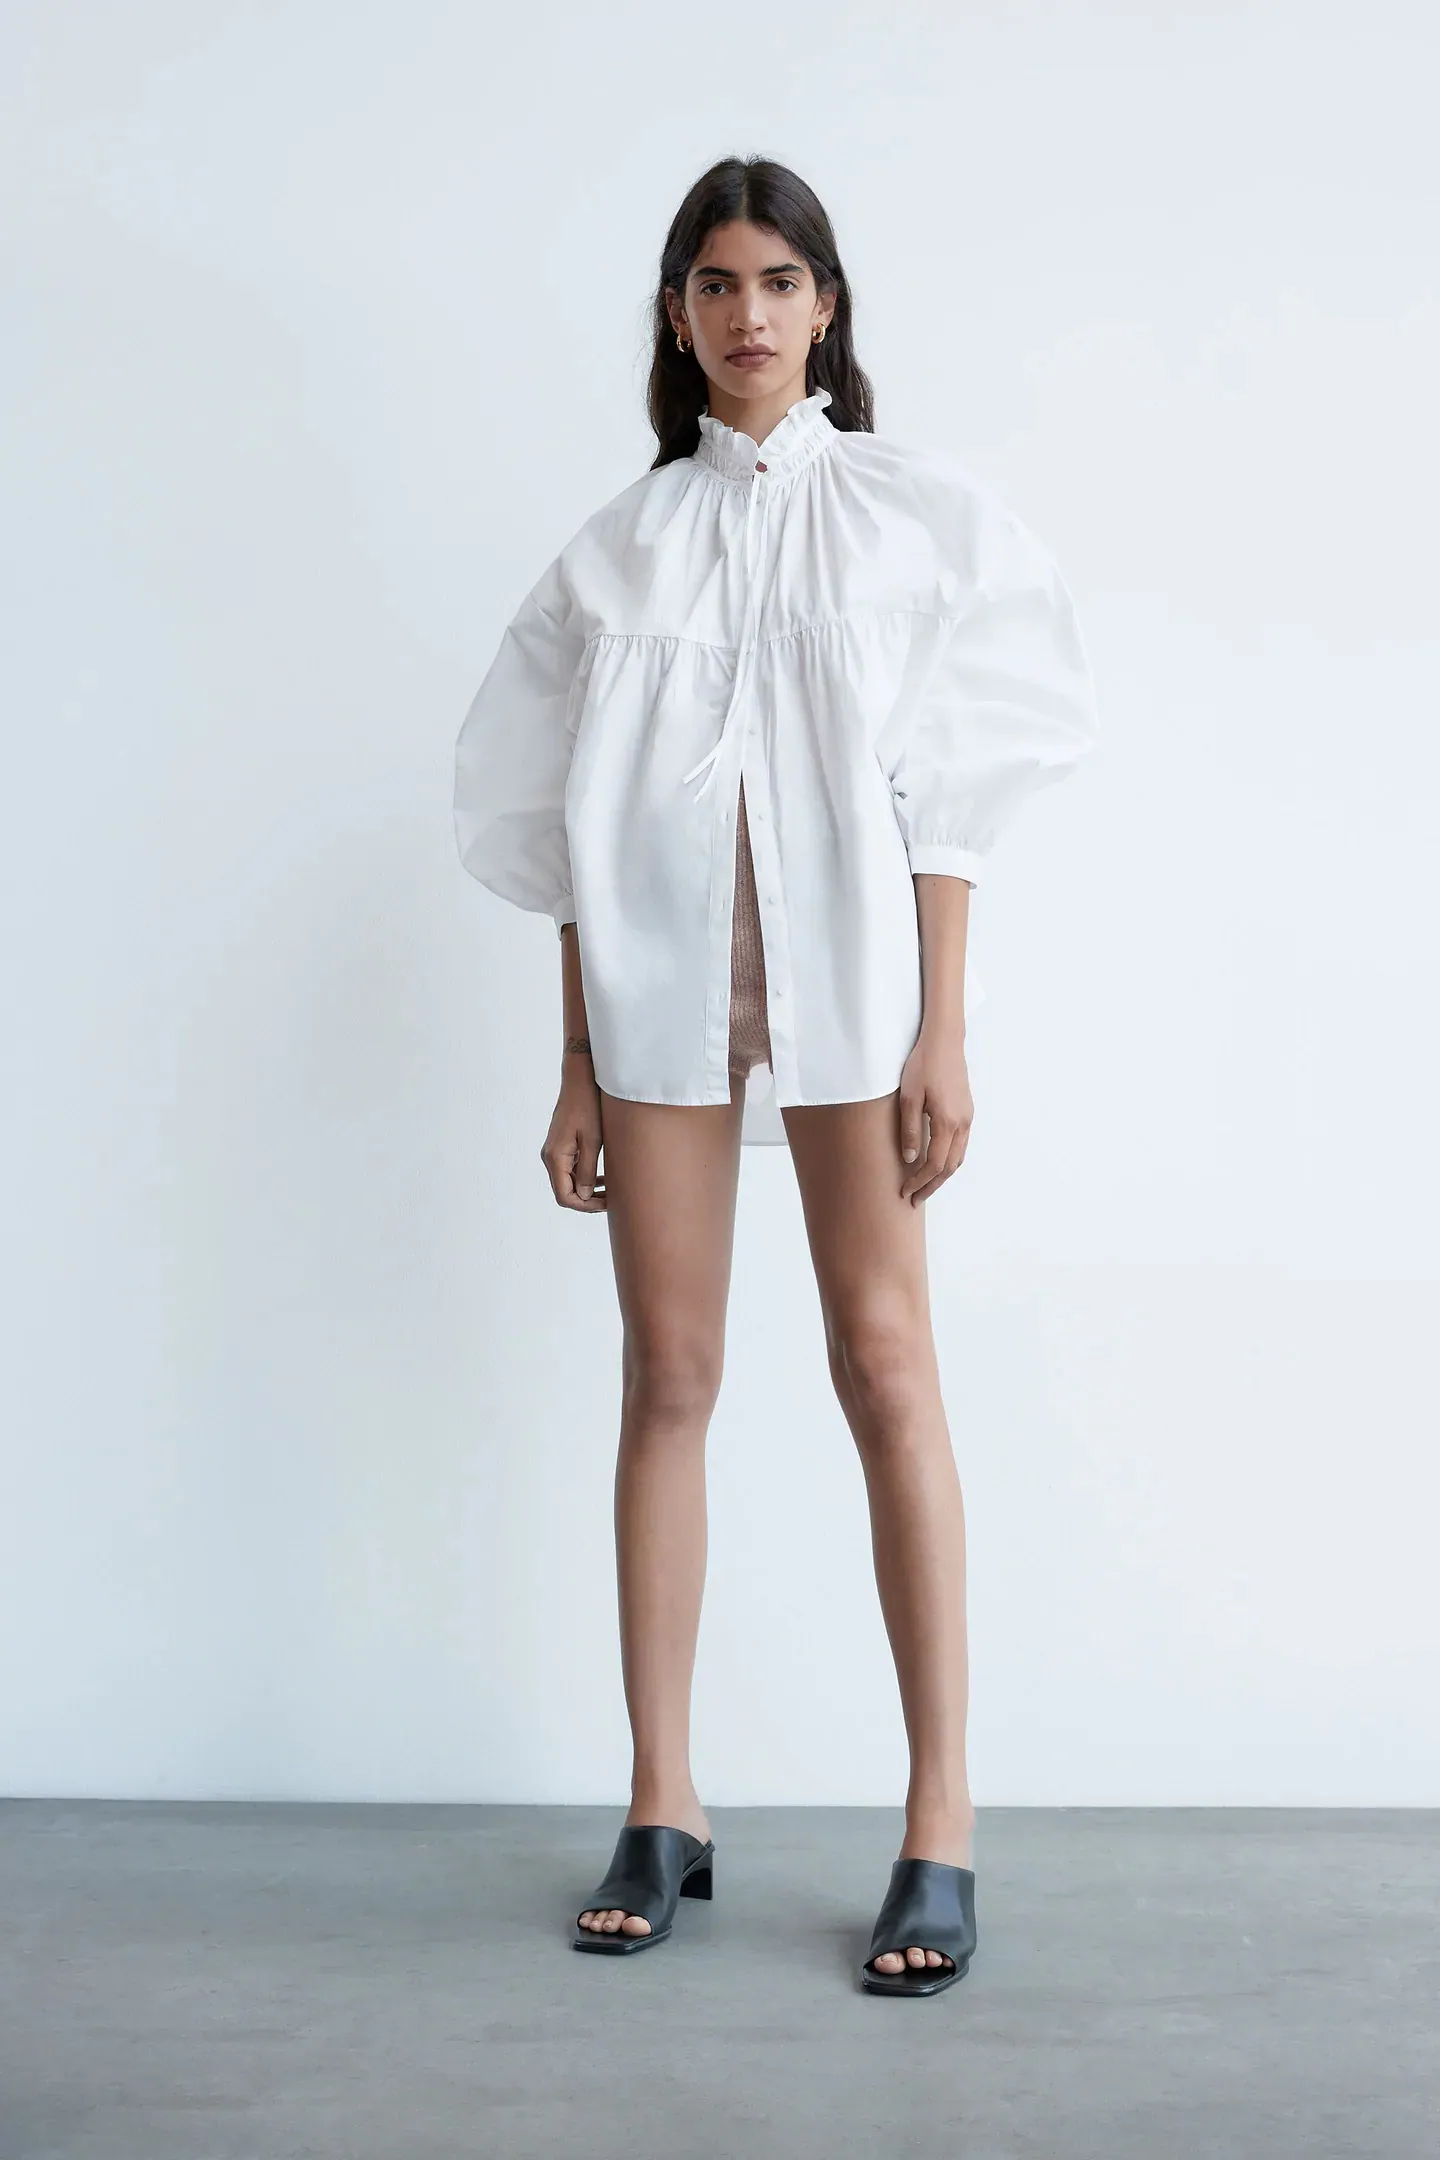 Fotos: Las camisas blancas más bonitas de las rebajas de Zara que serán esta primavera y que nos hacen soñar con el buen tiempo | Mujer Hoy